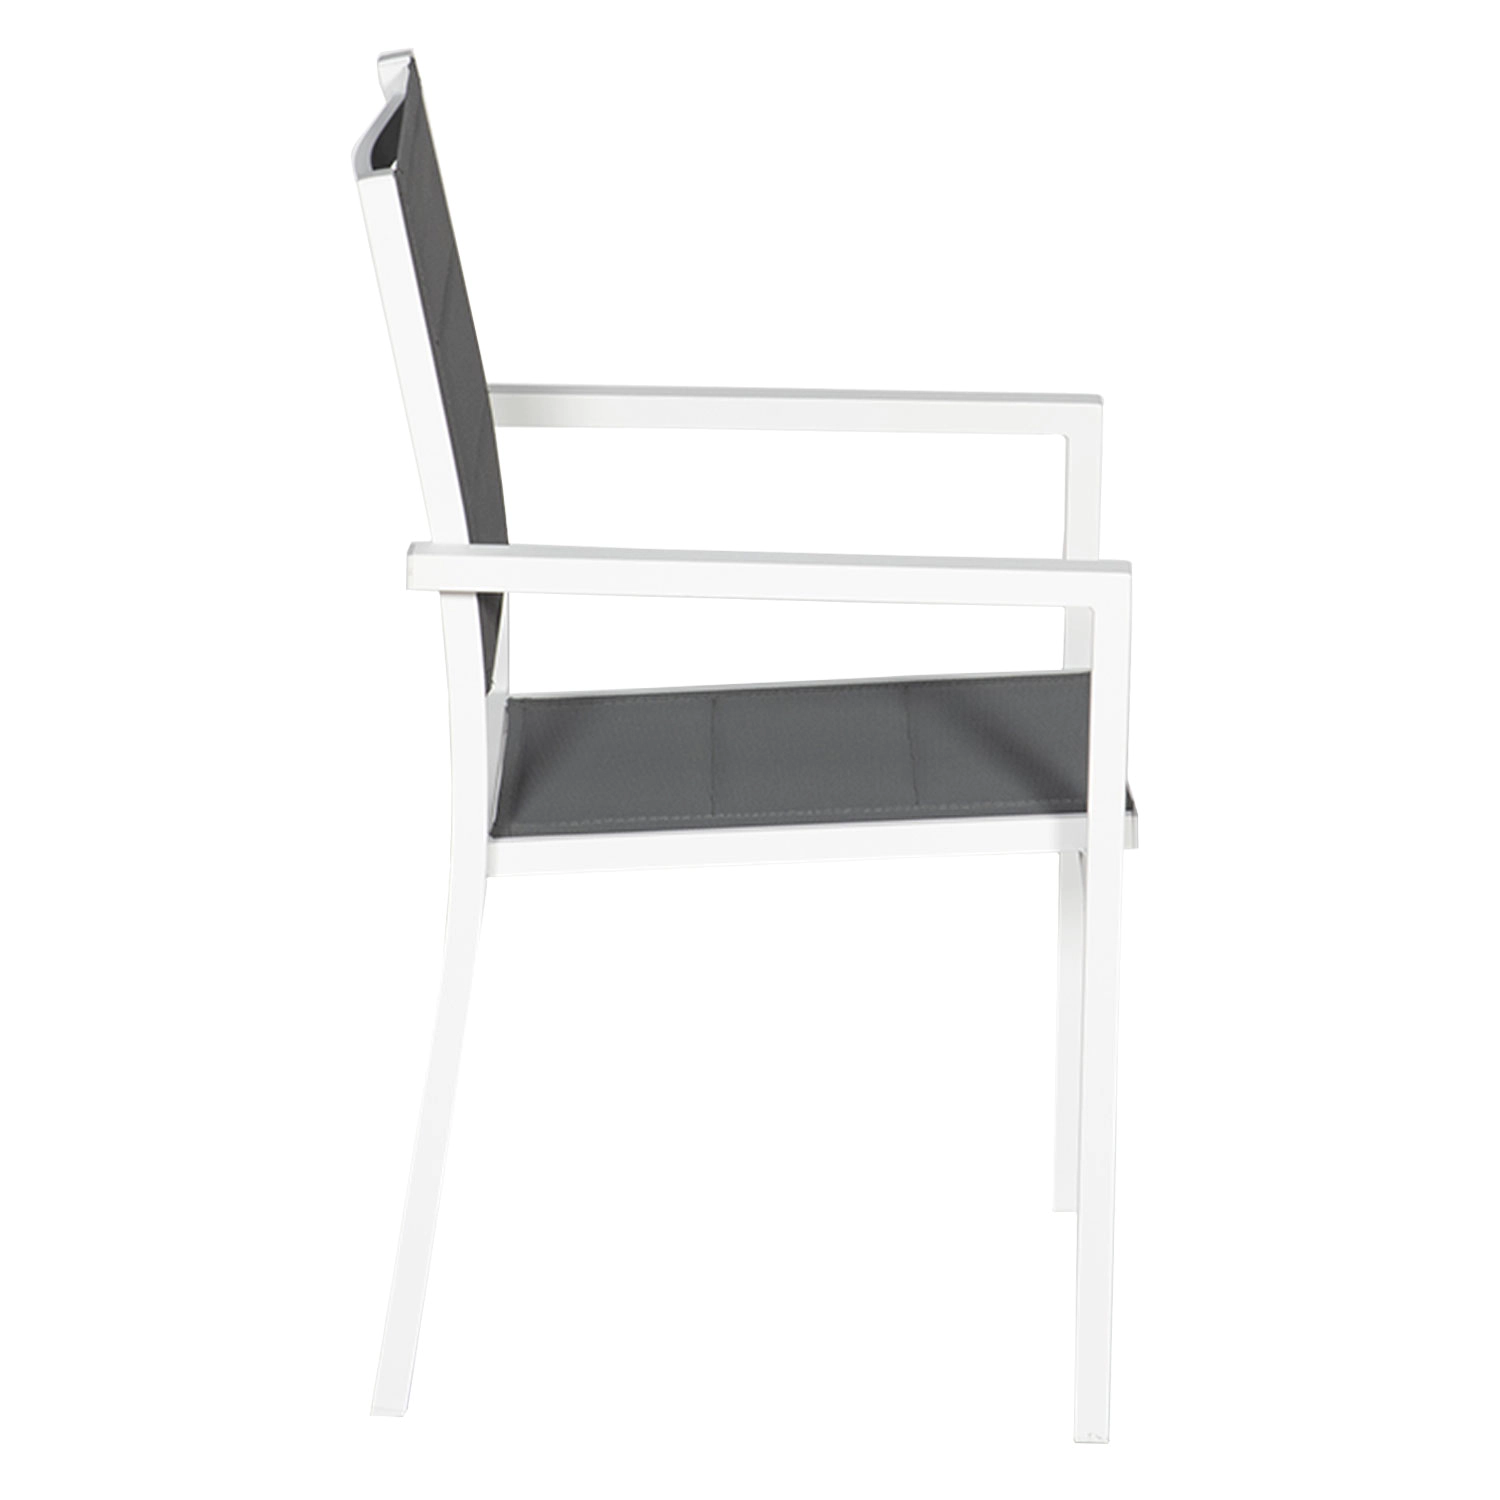 Satz von 10 gepolsterten Stühlen aus weißem Aluminium - graues Textilene